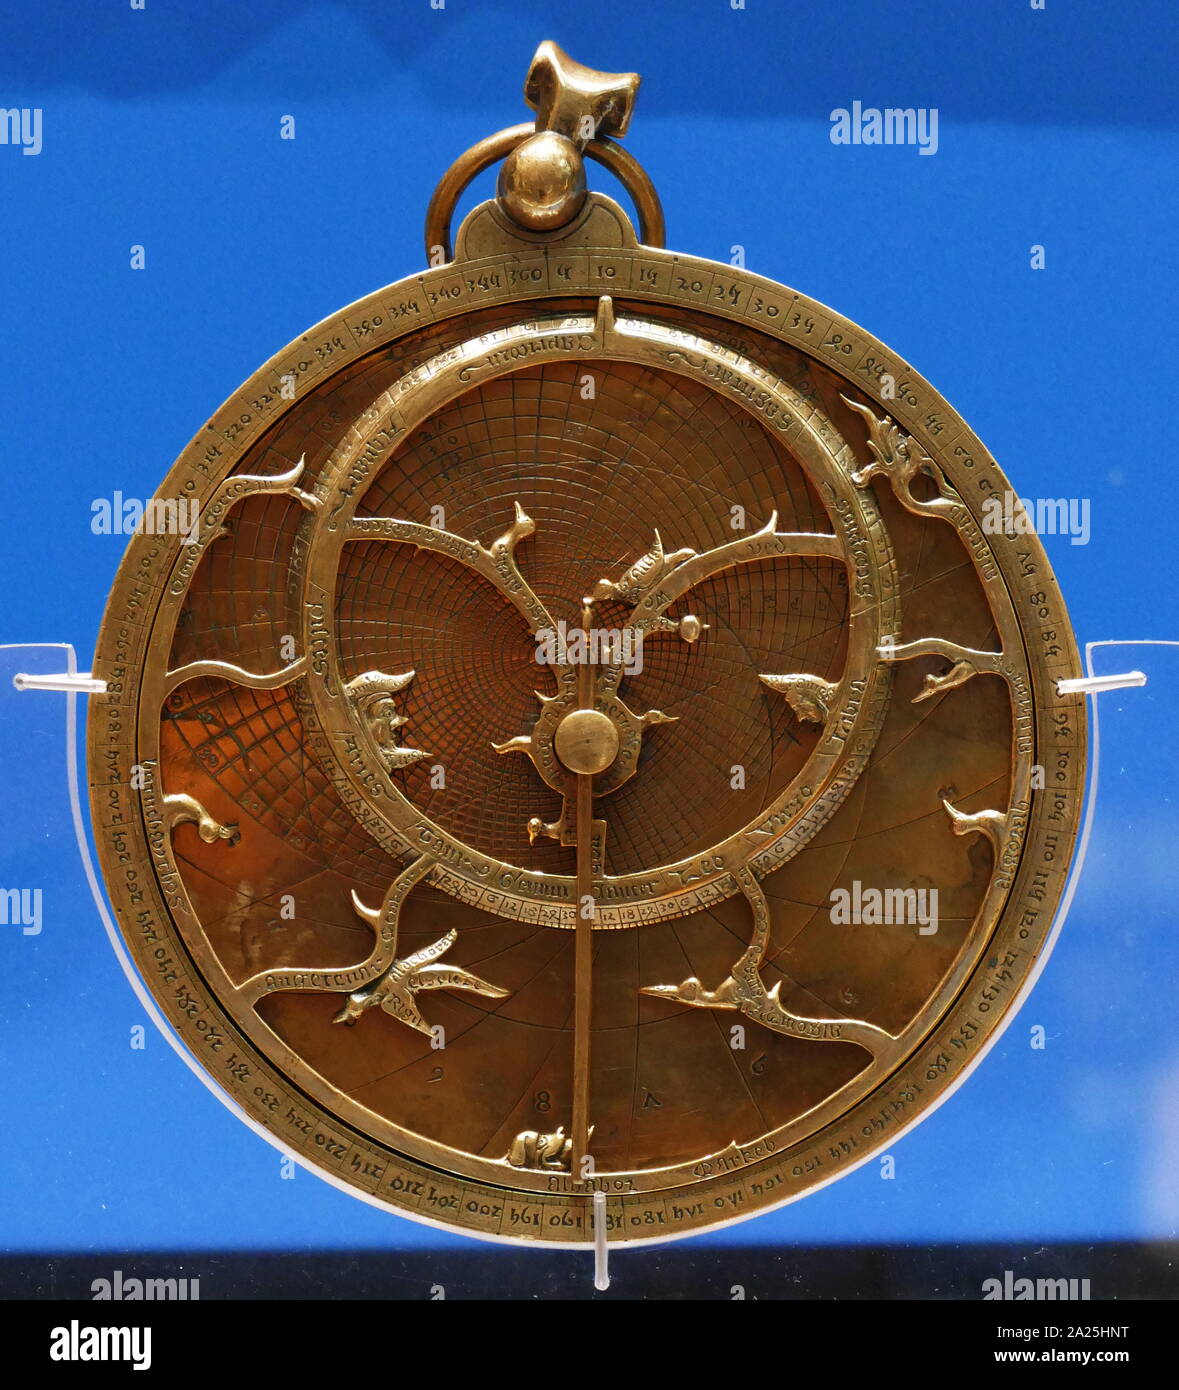 El 'astrolabio' de Chaucer. Este tipo de astrolabio ha sido vinculada con el poeta Geoffrey Chaucer (c. 1340-1400), quien ocupó importantes cargos real bajo Richard II. Un astrolabio es básicamente un mapa bidimensional de la esfera celeste. Este astrolabio, con fecha de 1326, se asemeja al cuadro descrito en Geoffrey Chaucer's tratado sobre el Astrolabio. Foto de stock